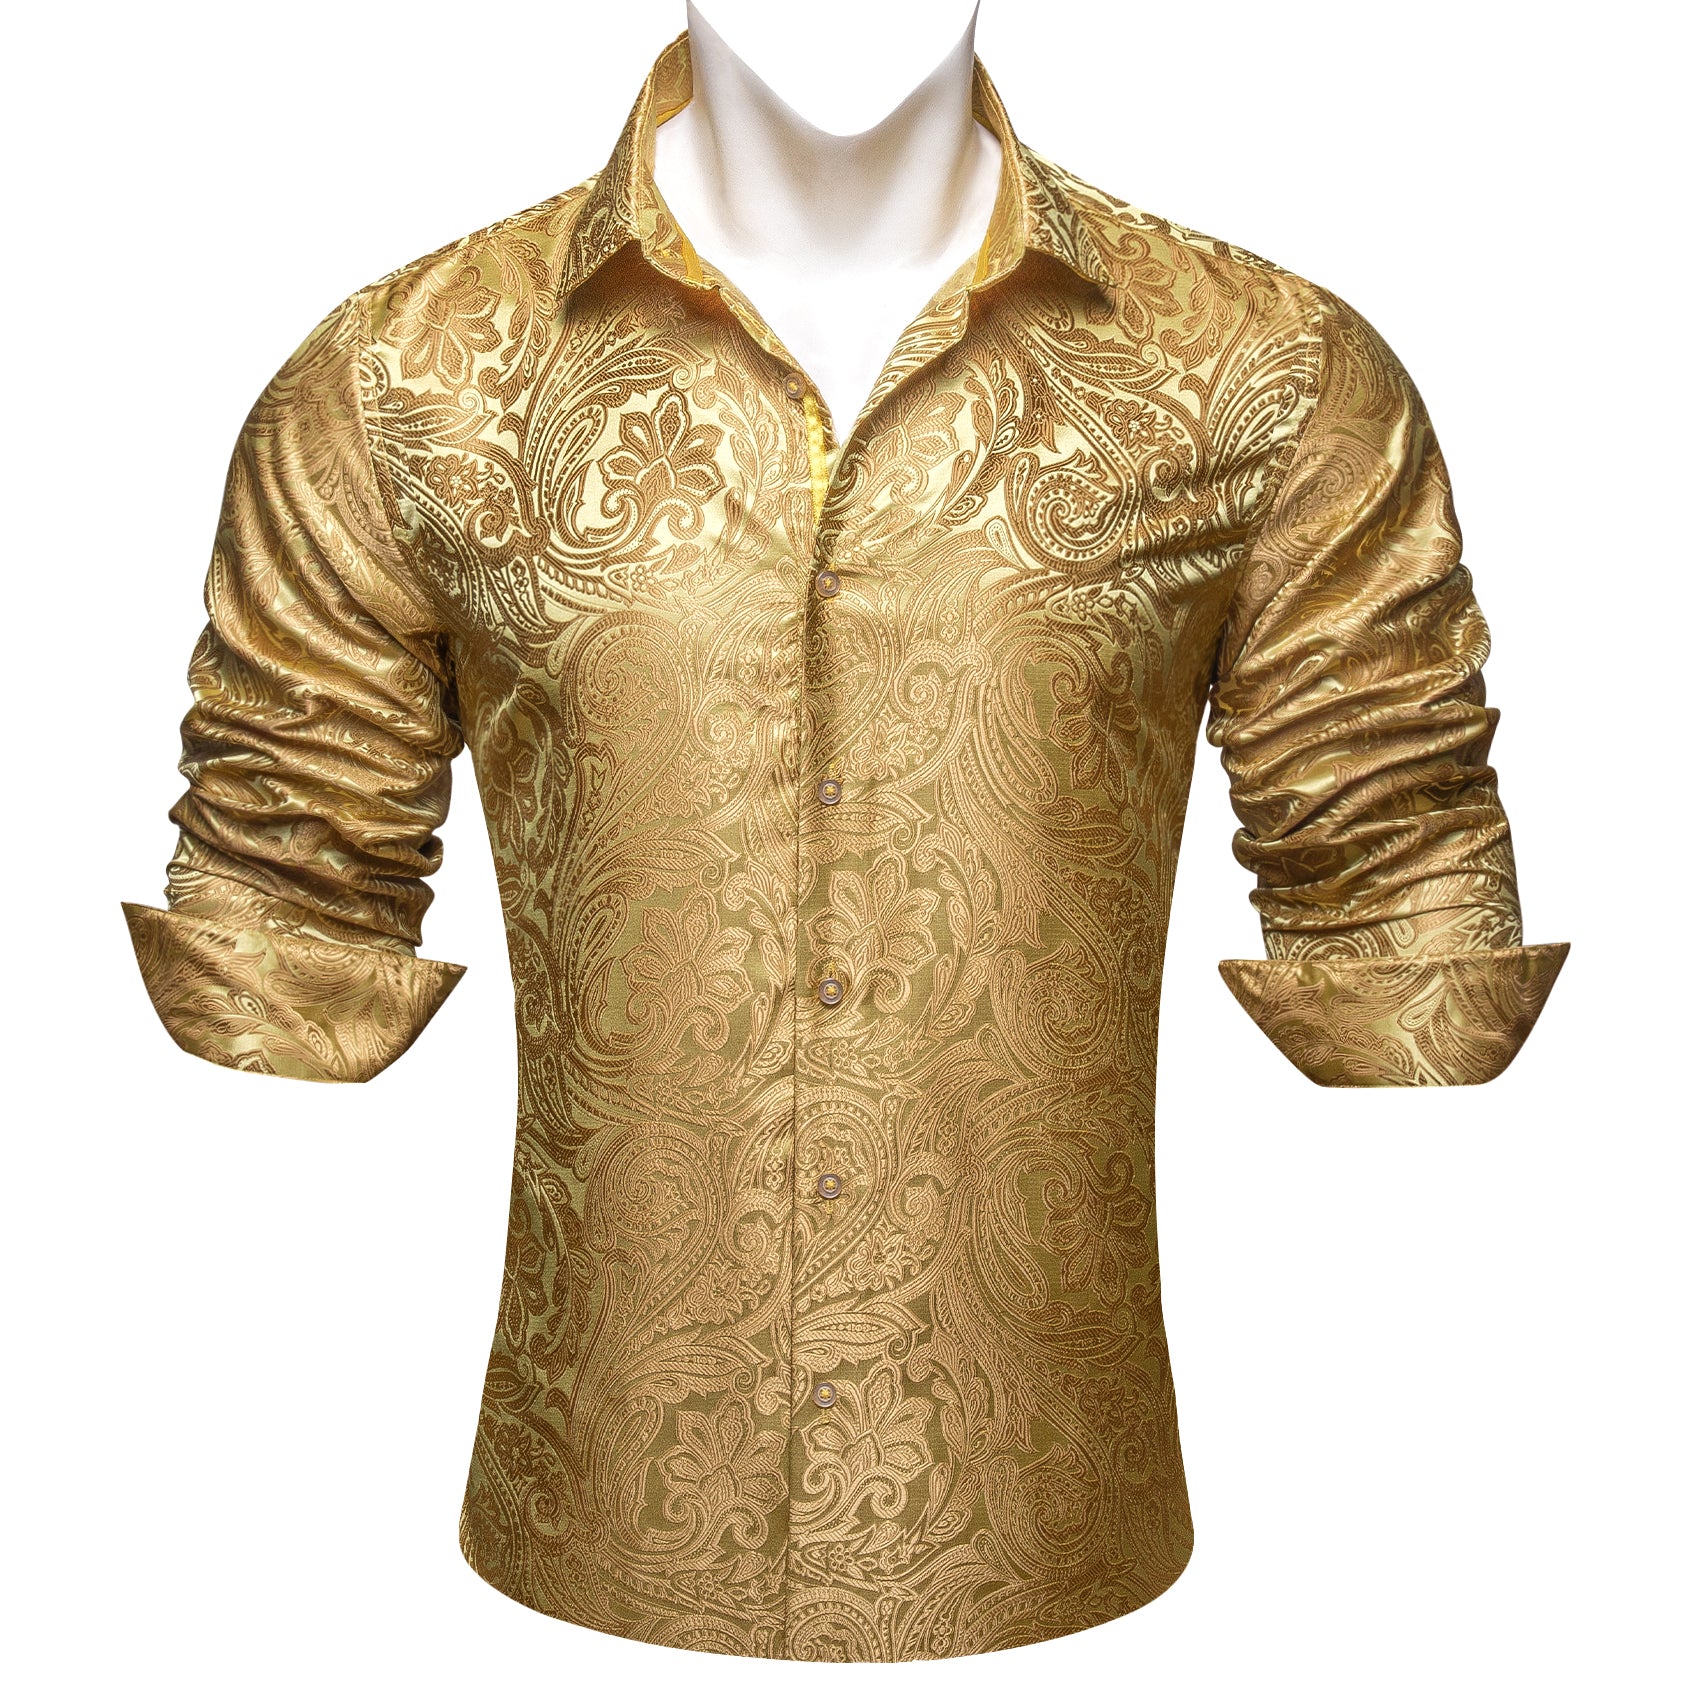 Barry.wang Gold Paisley Silk Men's Shirt